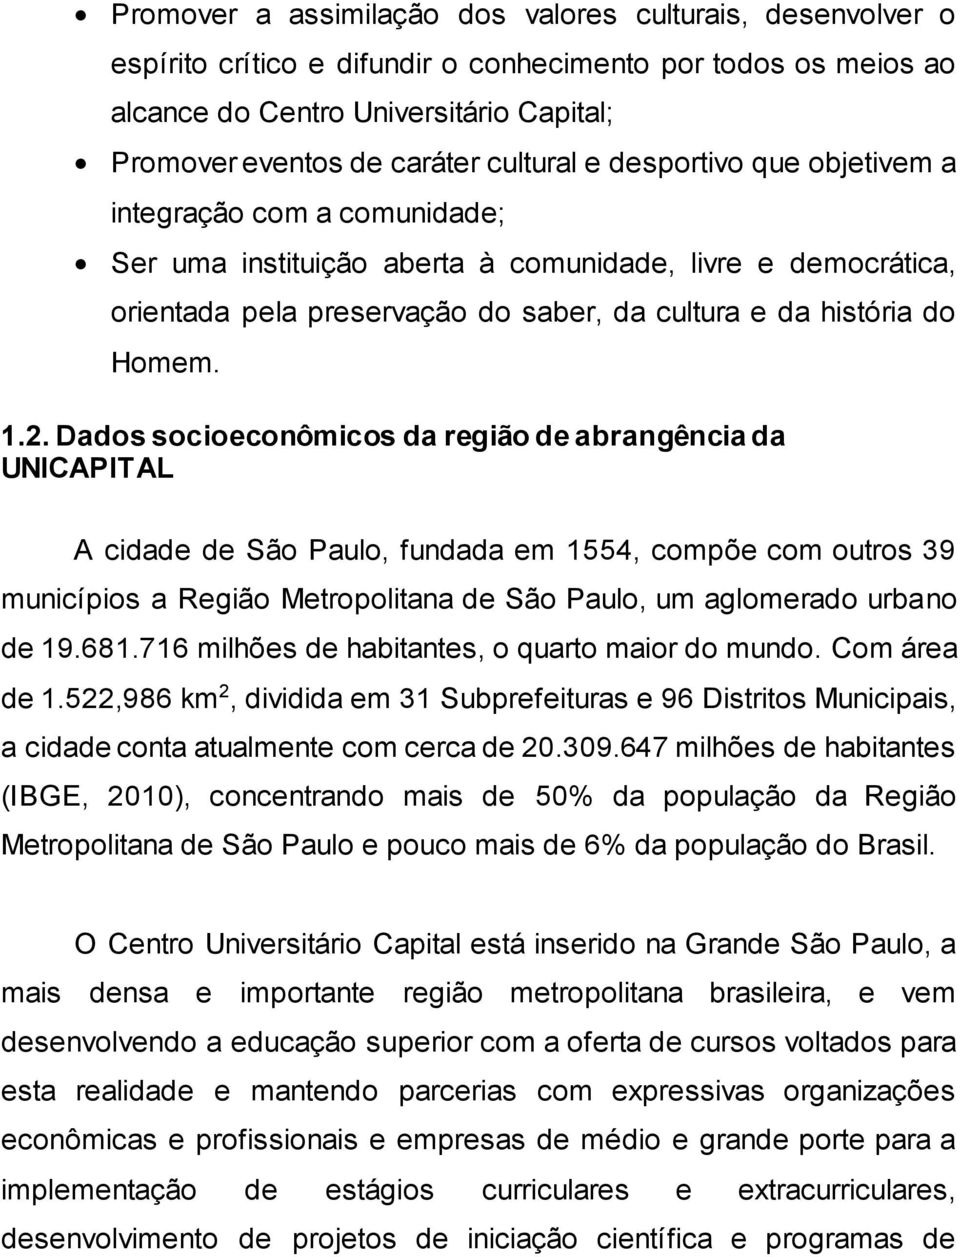 1.2. Dados socioeconômicos da região de abrangência da UNICAPITAL A cidade de São Paulo, fundada em 1554, compõe com outros 39 municípios a Região Metropolitana de São Paulo, um aglomerado urbano de